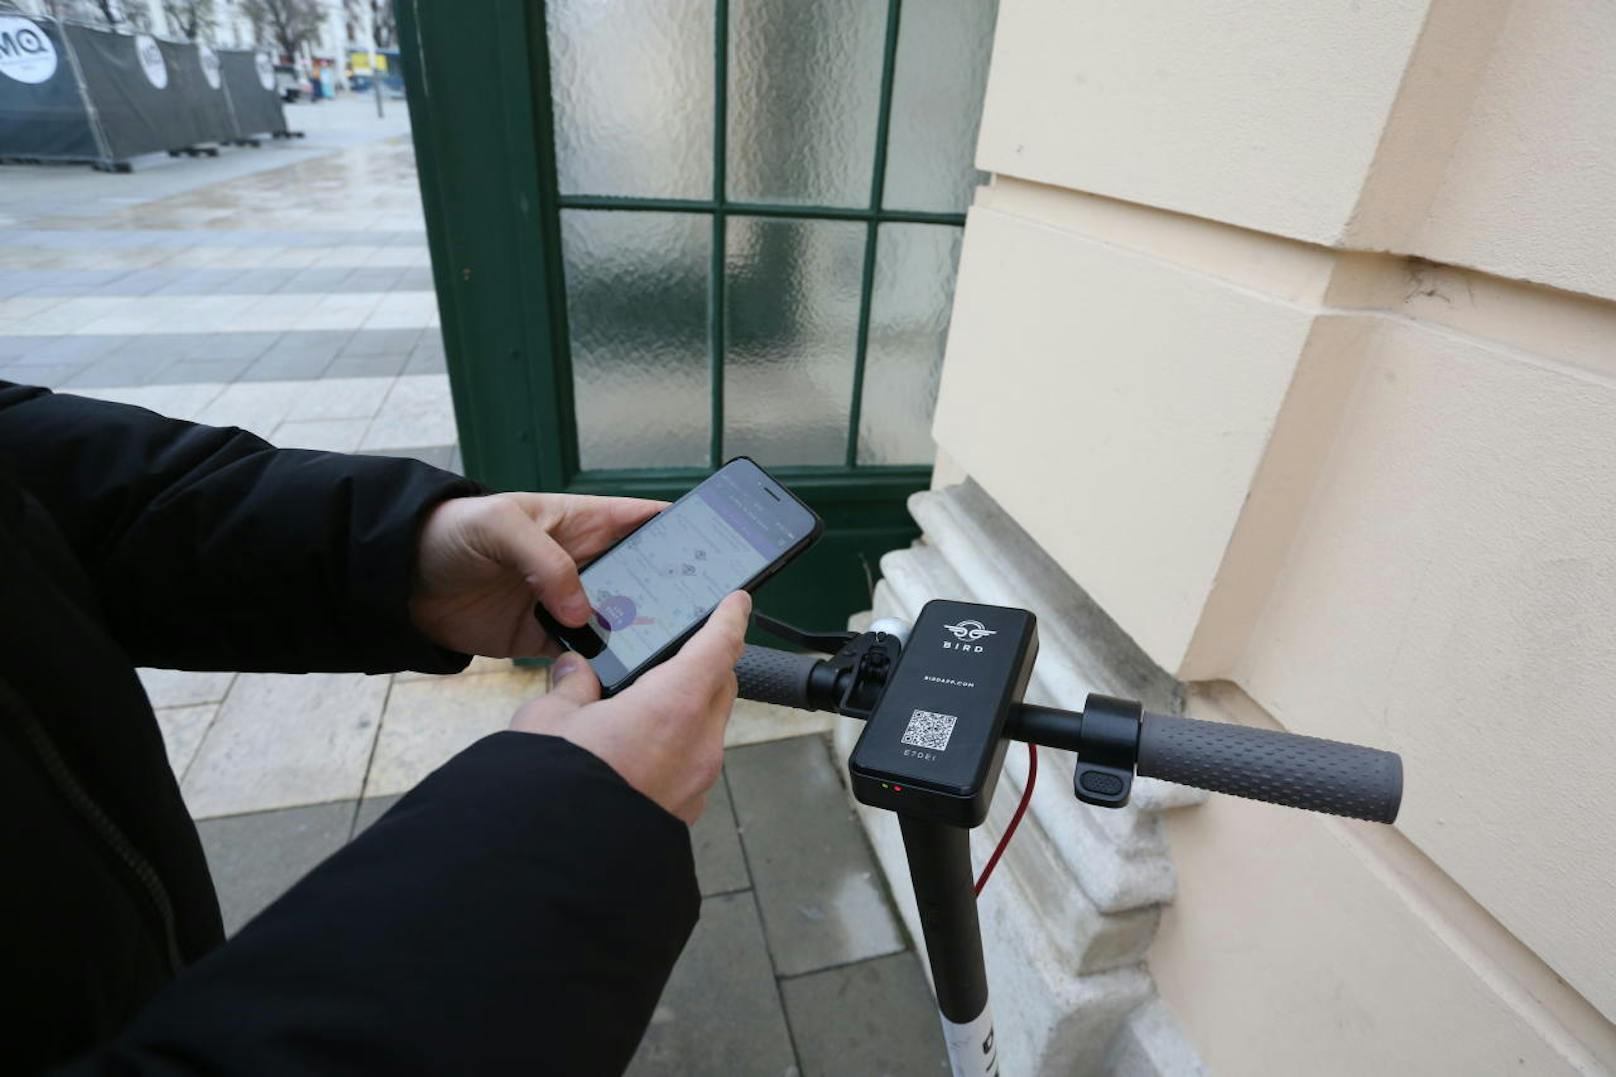 Bremstest für E-Scooter auf der Mariahilfer Straße in Wien. Zuerst wird der E-Scooter mit der App freigeschaltet.